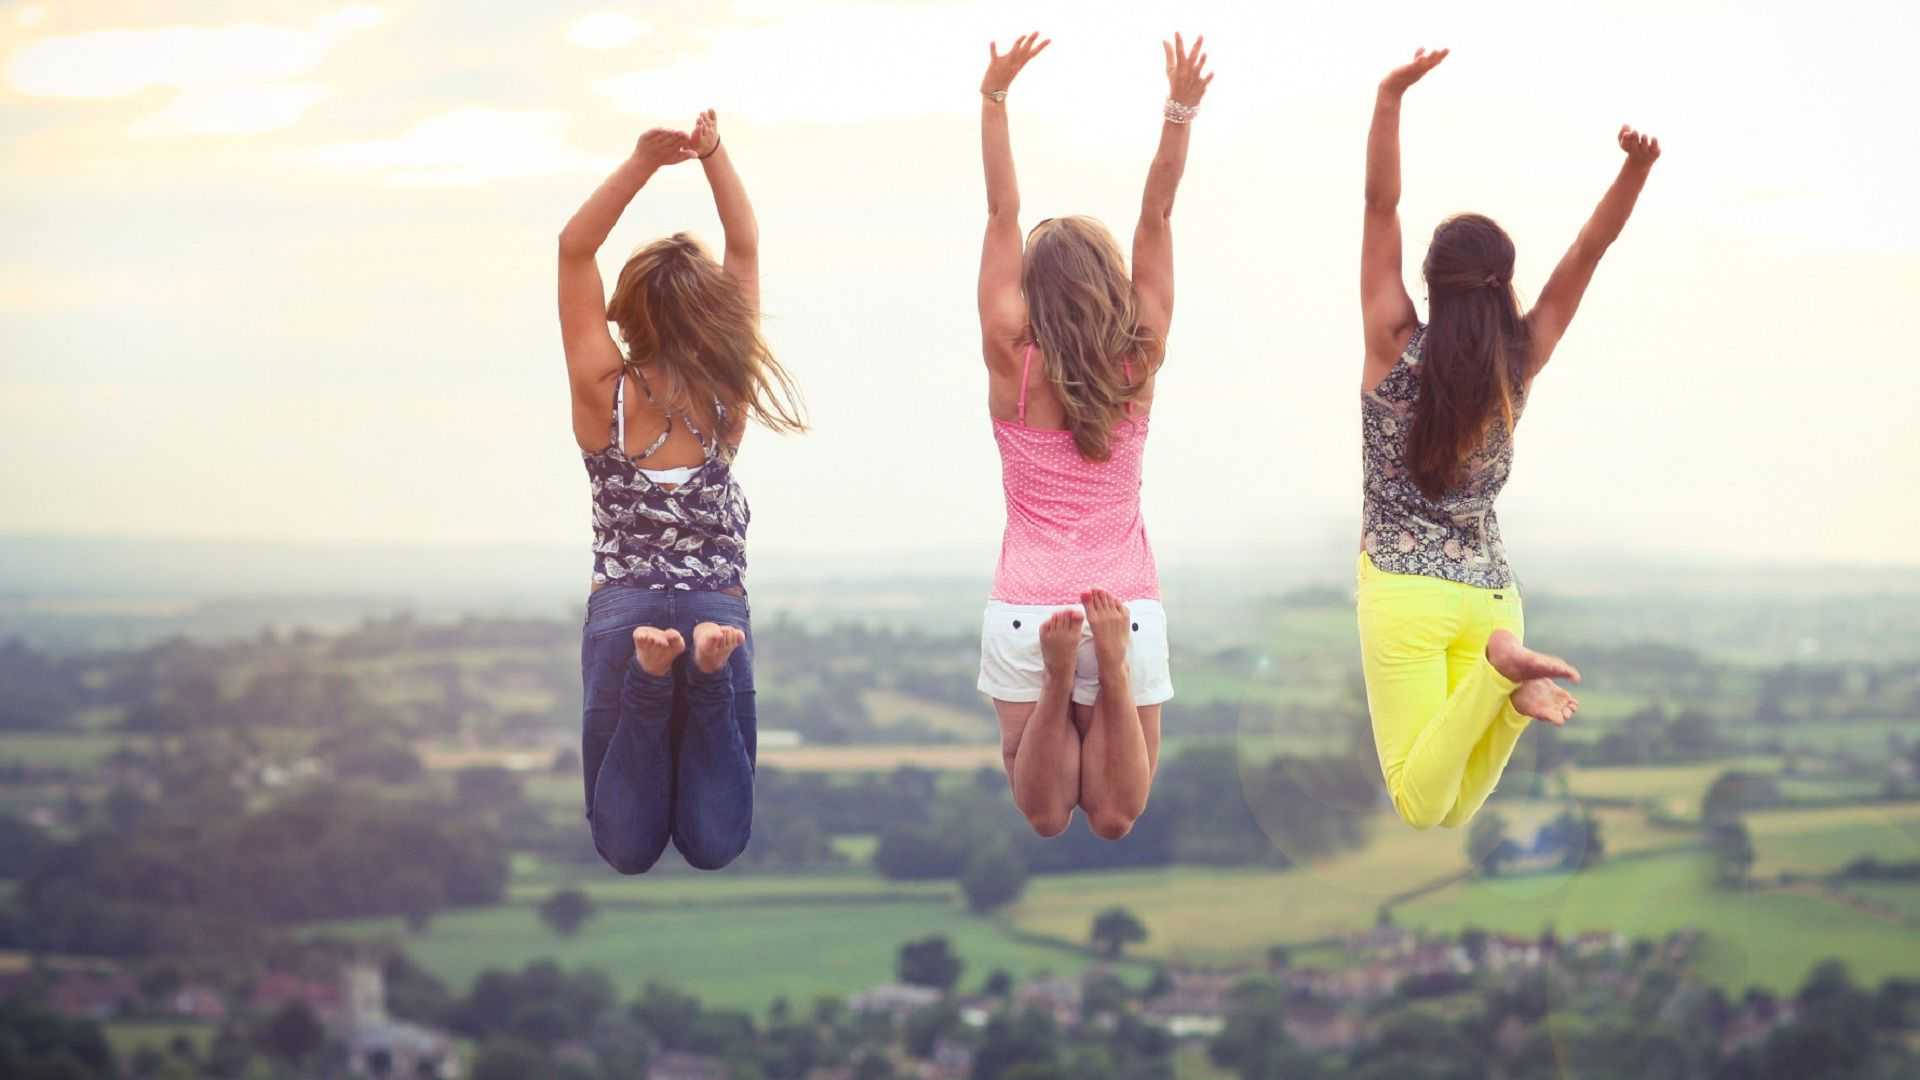 Download 3 Best Friends Back View Jump Shot Wallpaper 